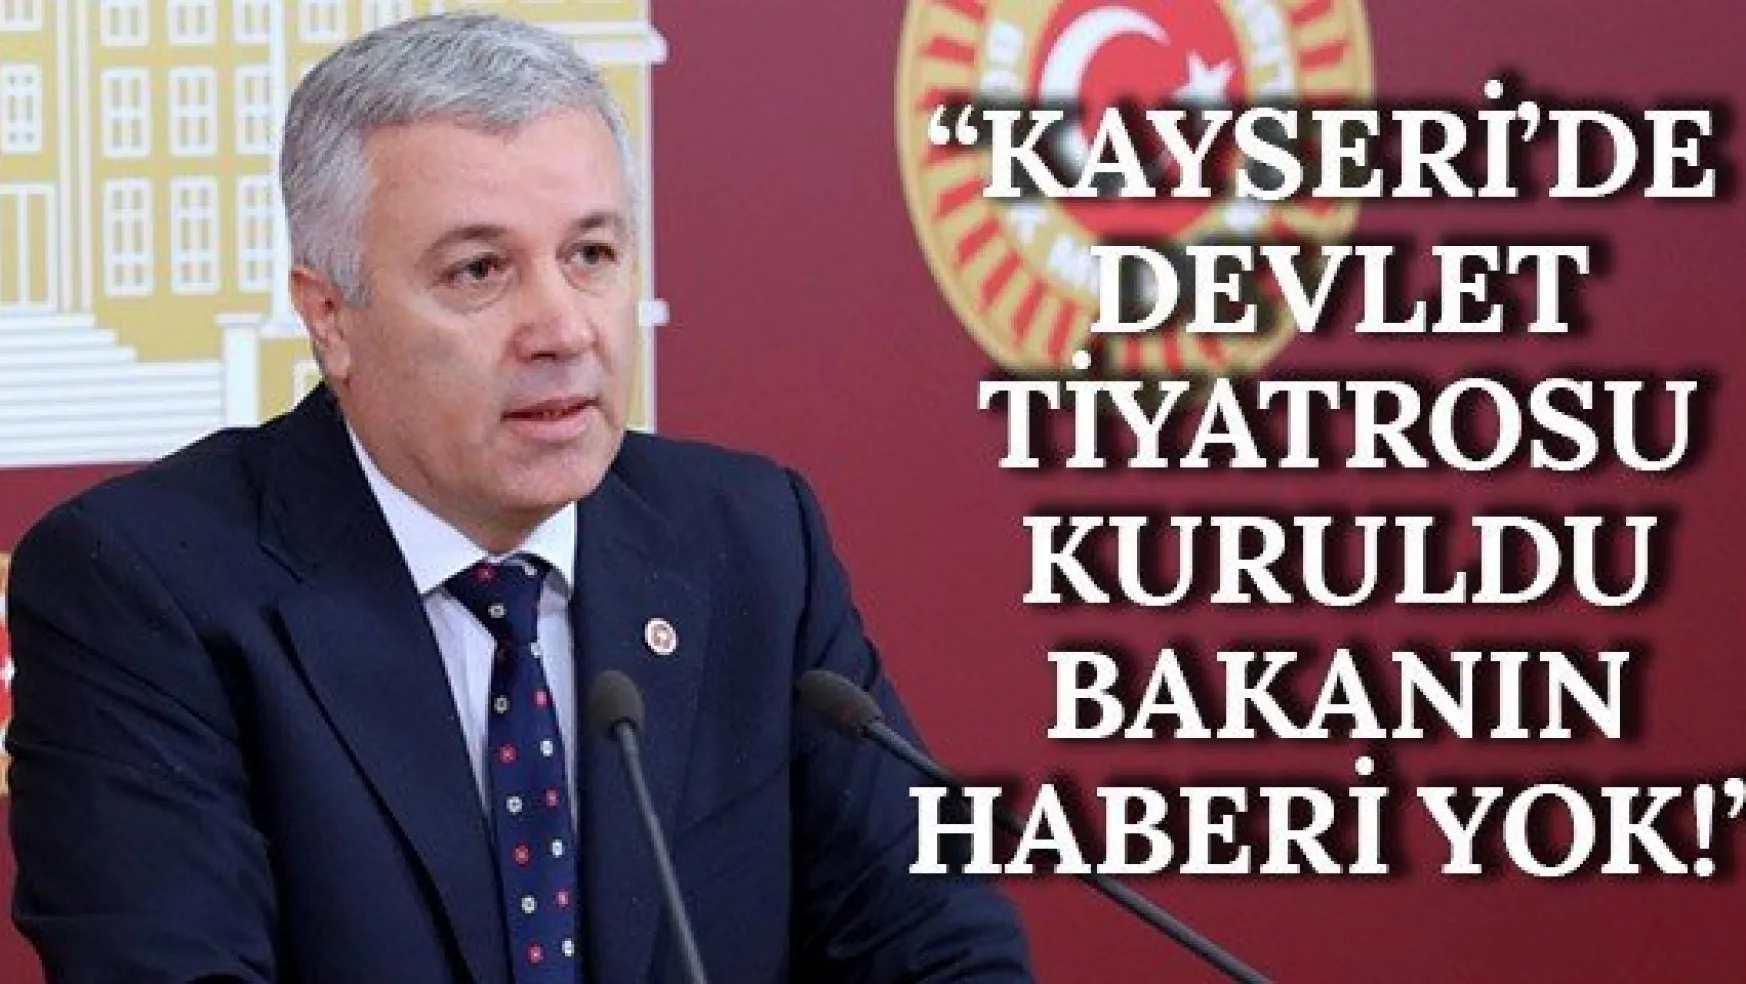 'Kayseri'de devlet tiyatrosu kuruldu bakanın haberi yok!'